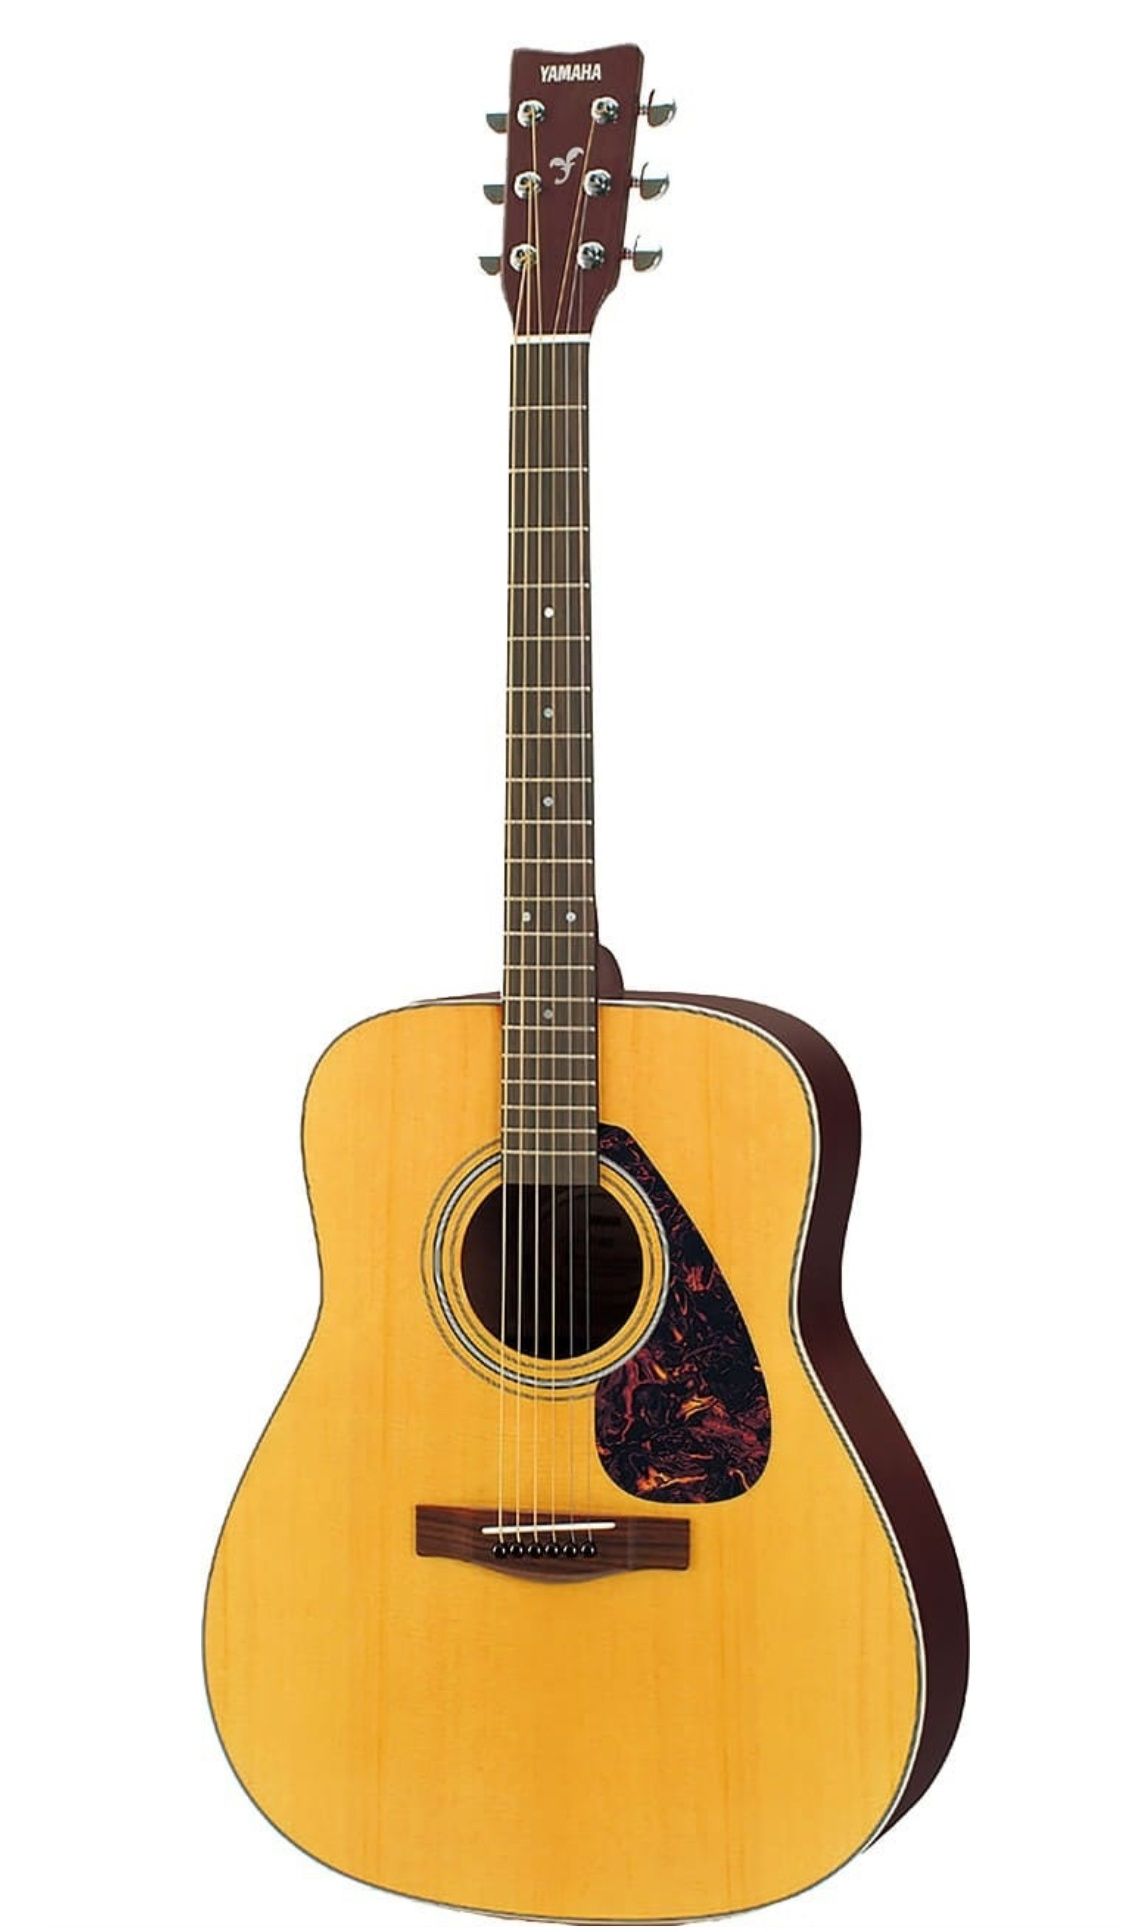 Yamaha F370 гитары в продаже